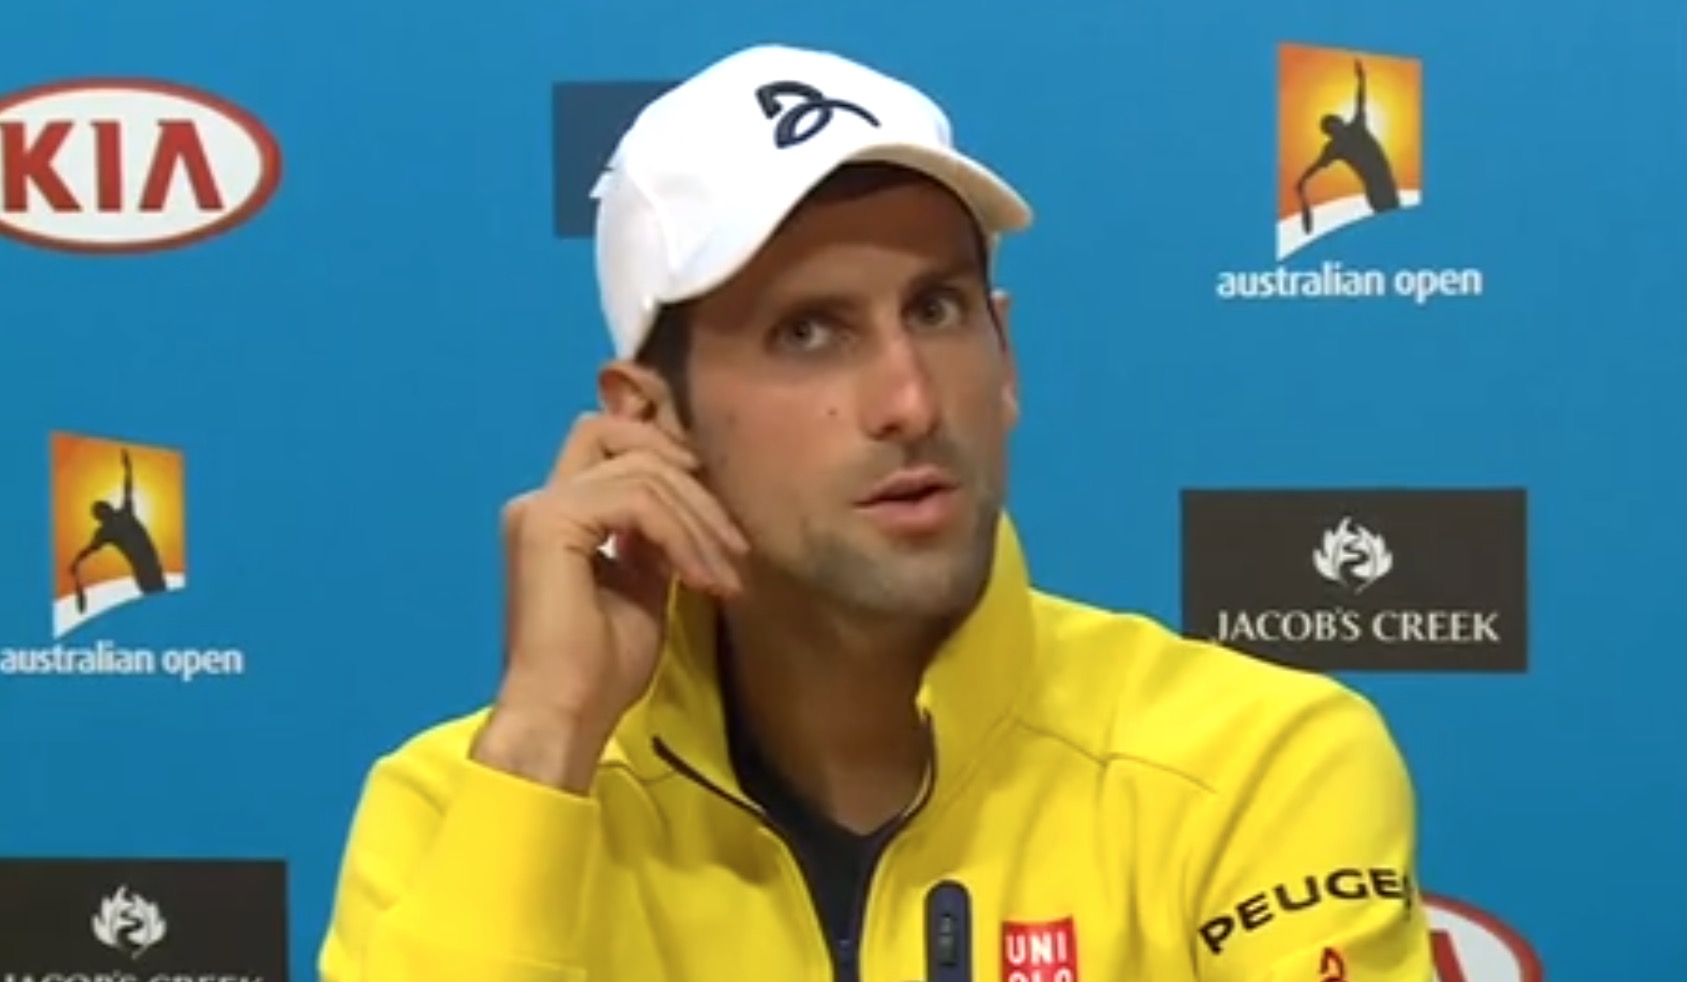 Matchs truqués de tennis : 200 000 euros proposés à Djokovic pour planter un match